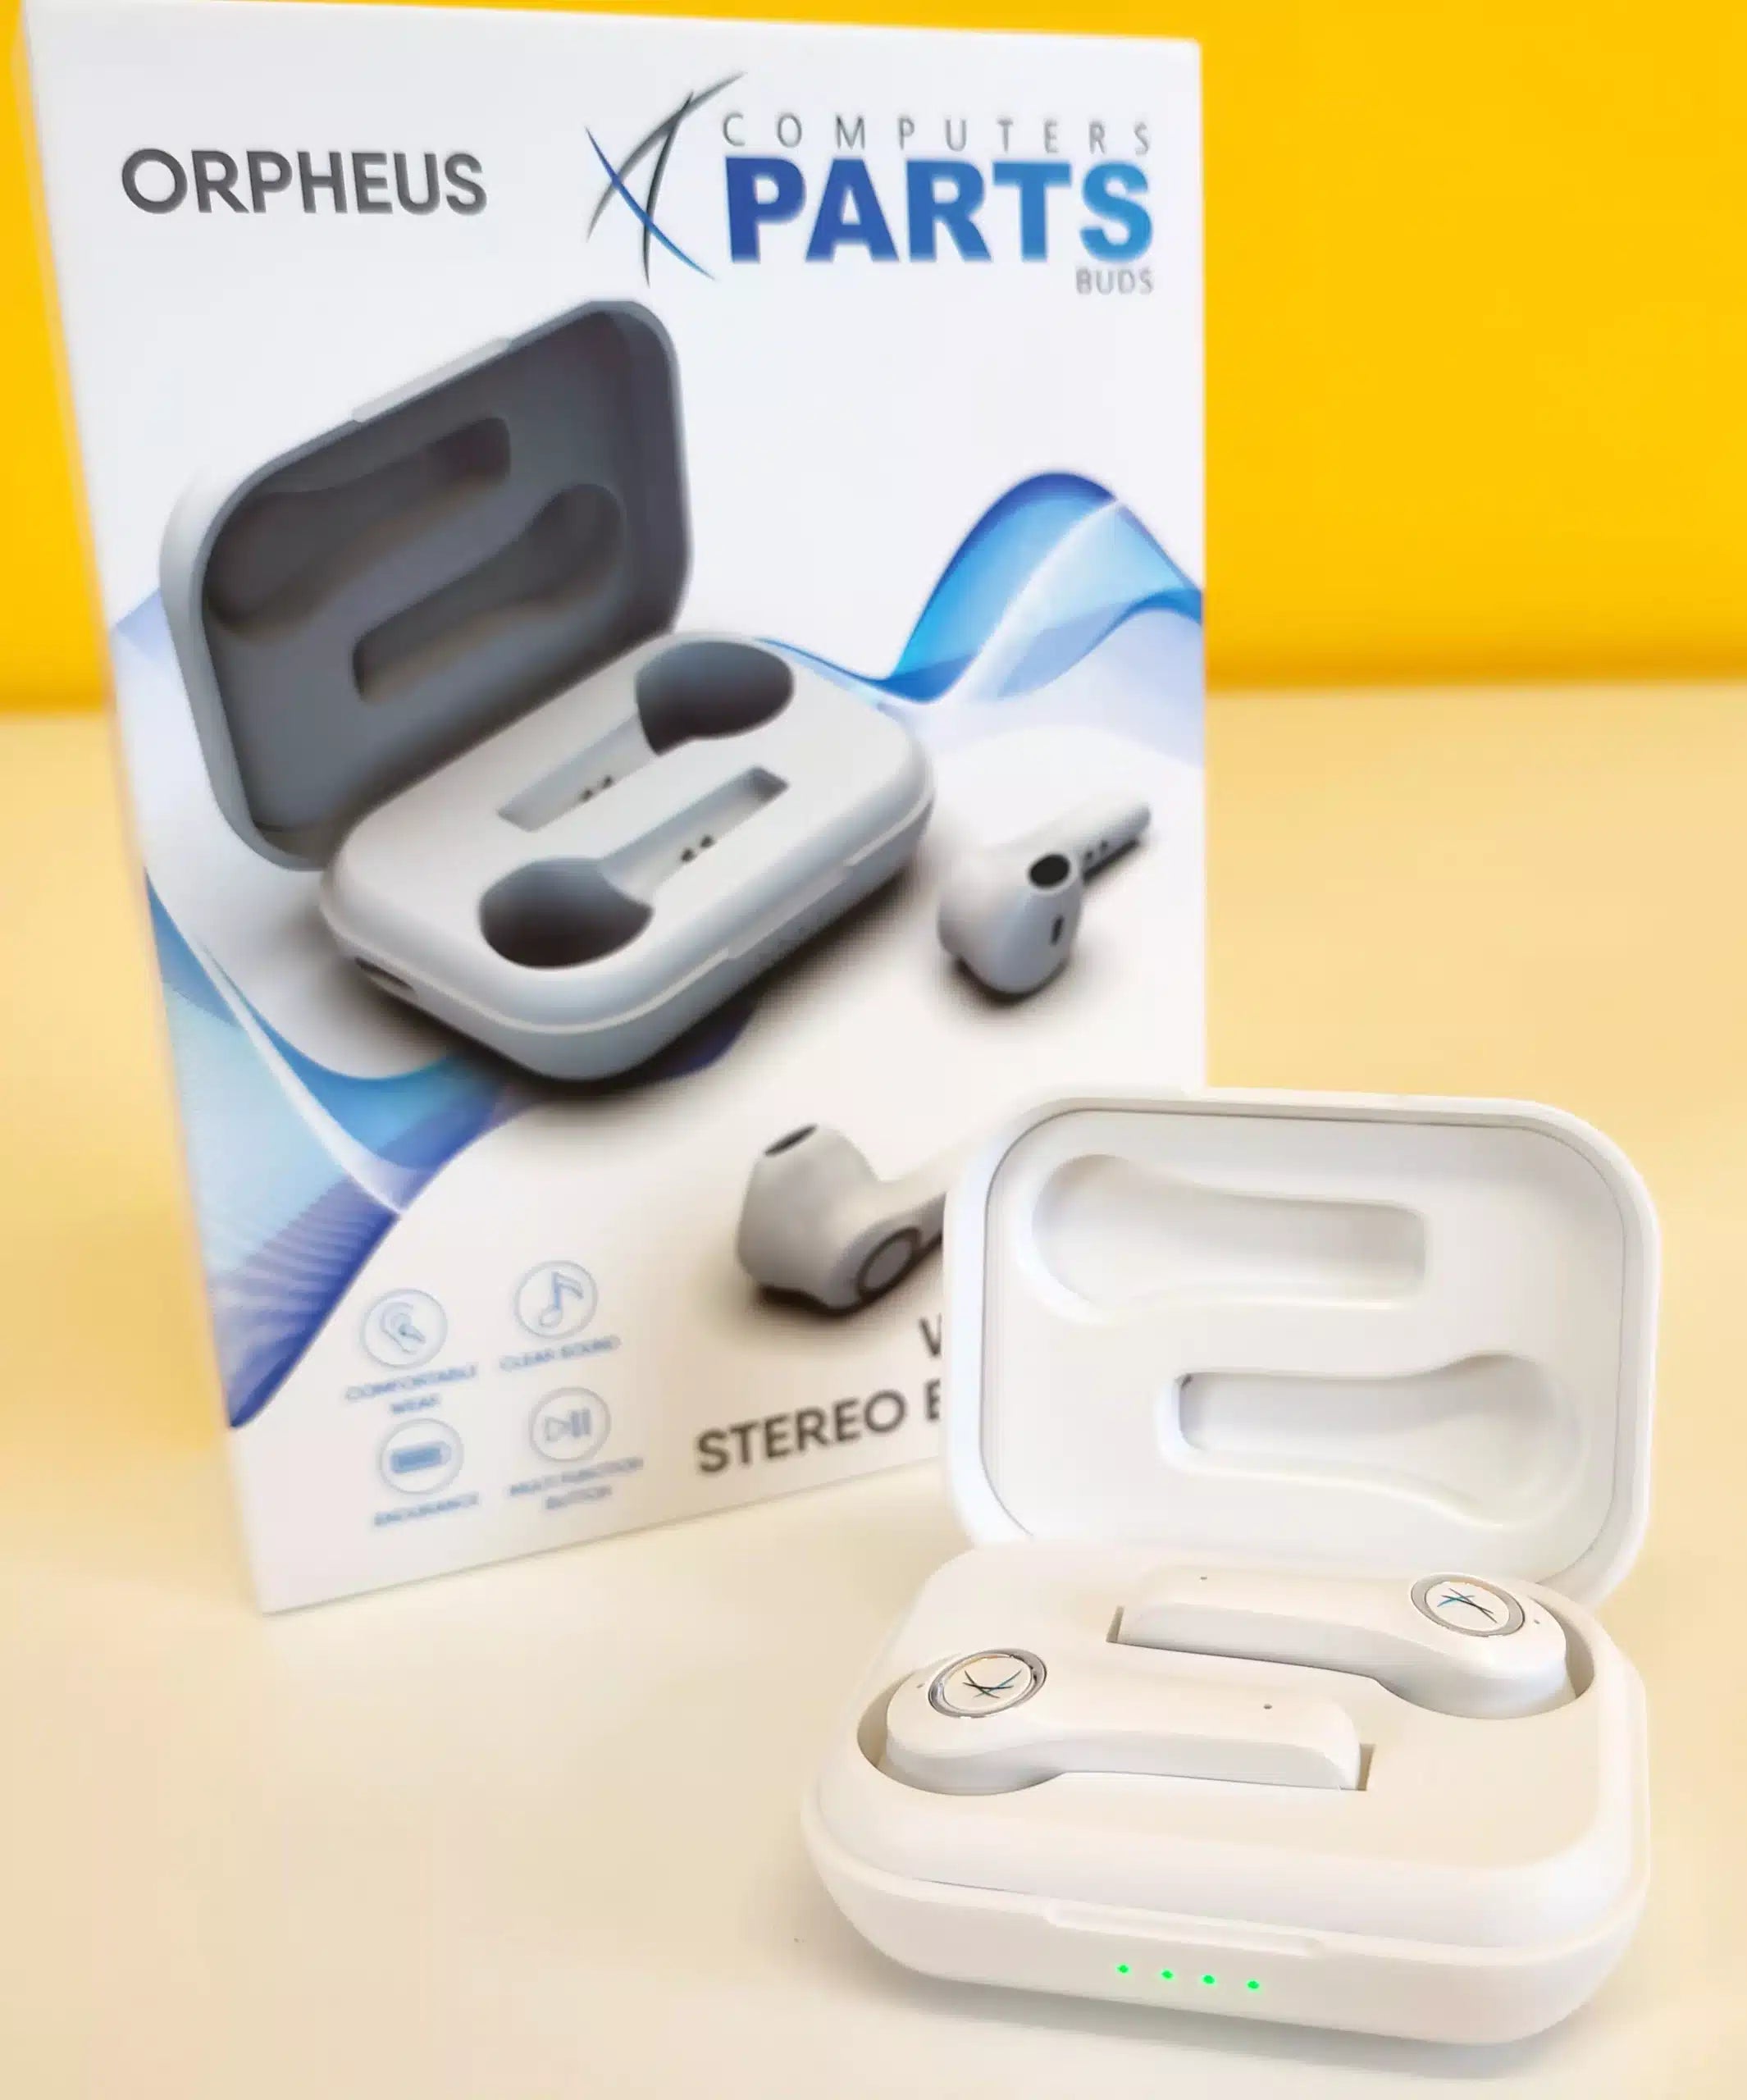 Orpheus Auricolari Wireless Stereo Bluetooth Cuffie Ascolta la tua musica preferita in alta qualità e senza fili